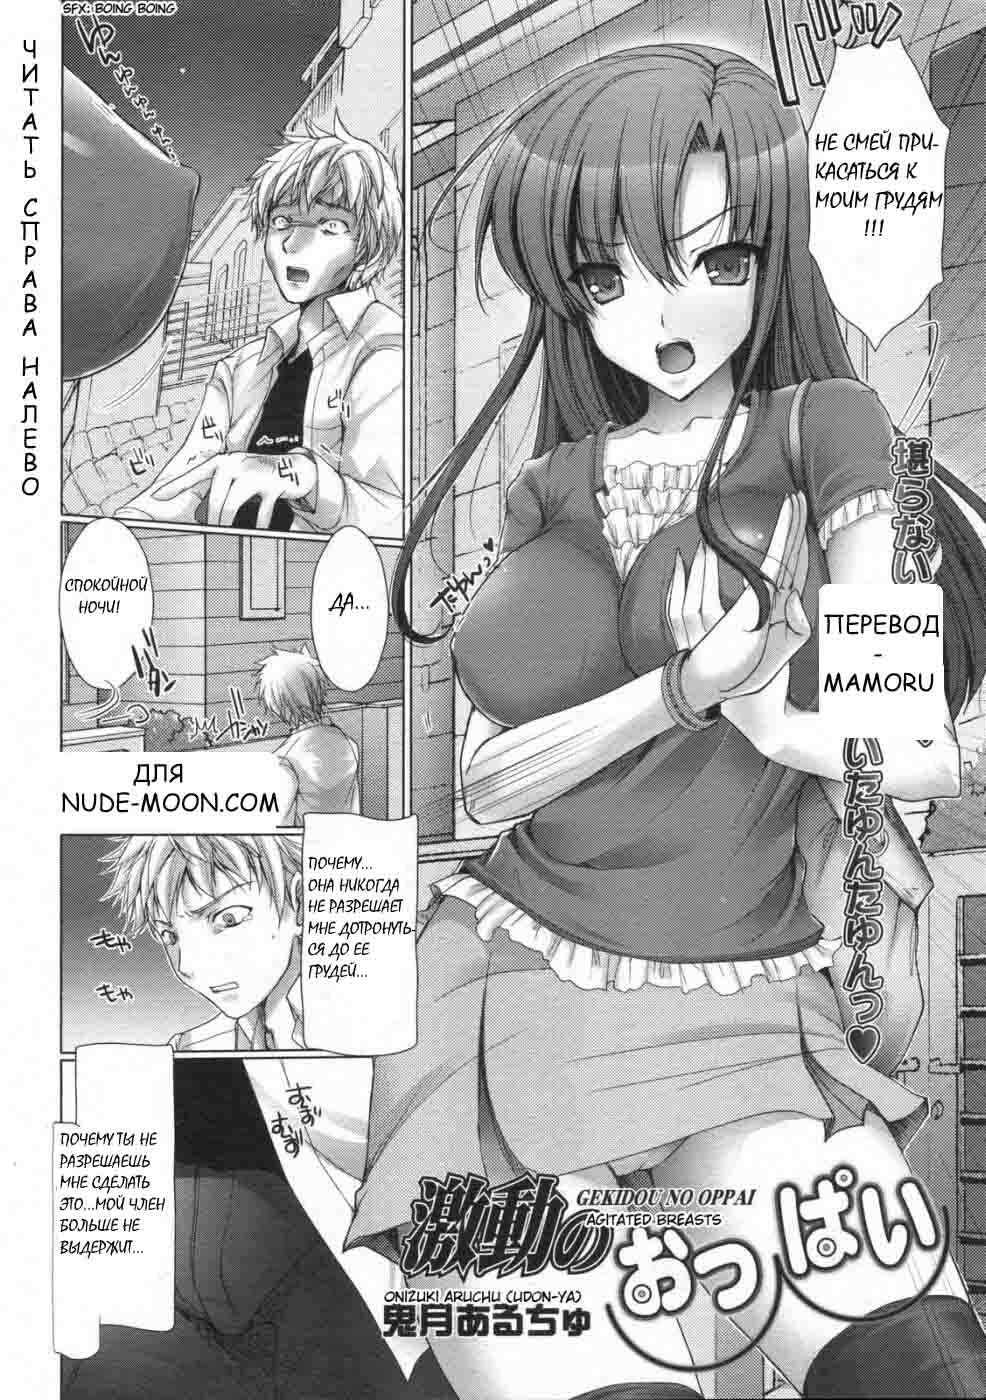 [Onizuki Aruchu (Udon-ya)] Gekidou no oppai (Agitated breasts) [RUS] page 2 full